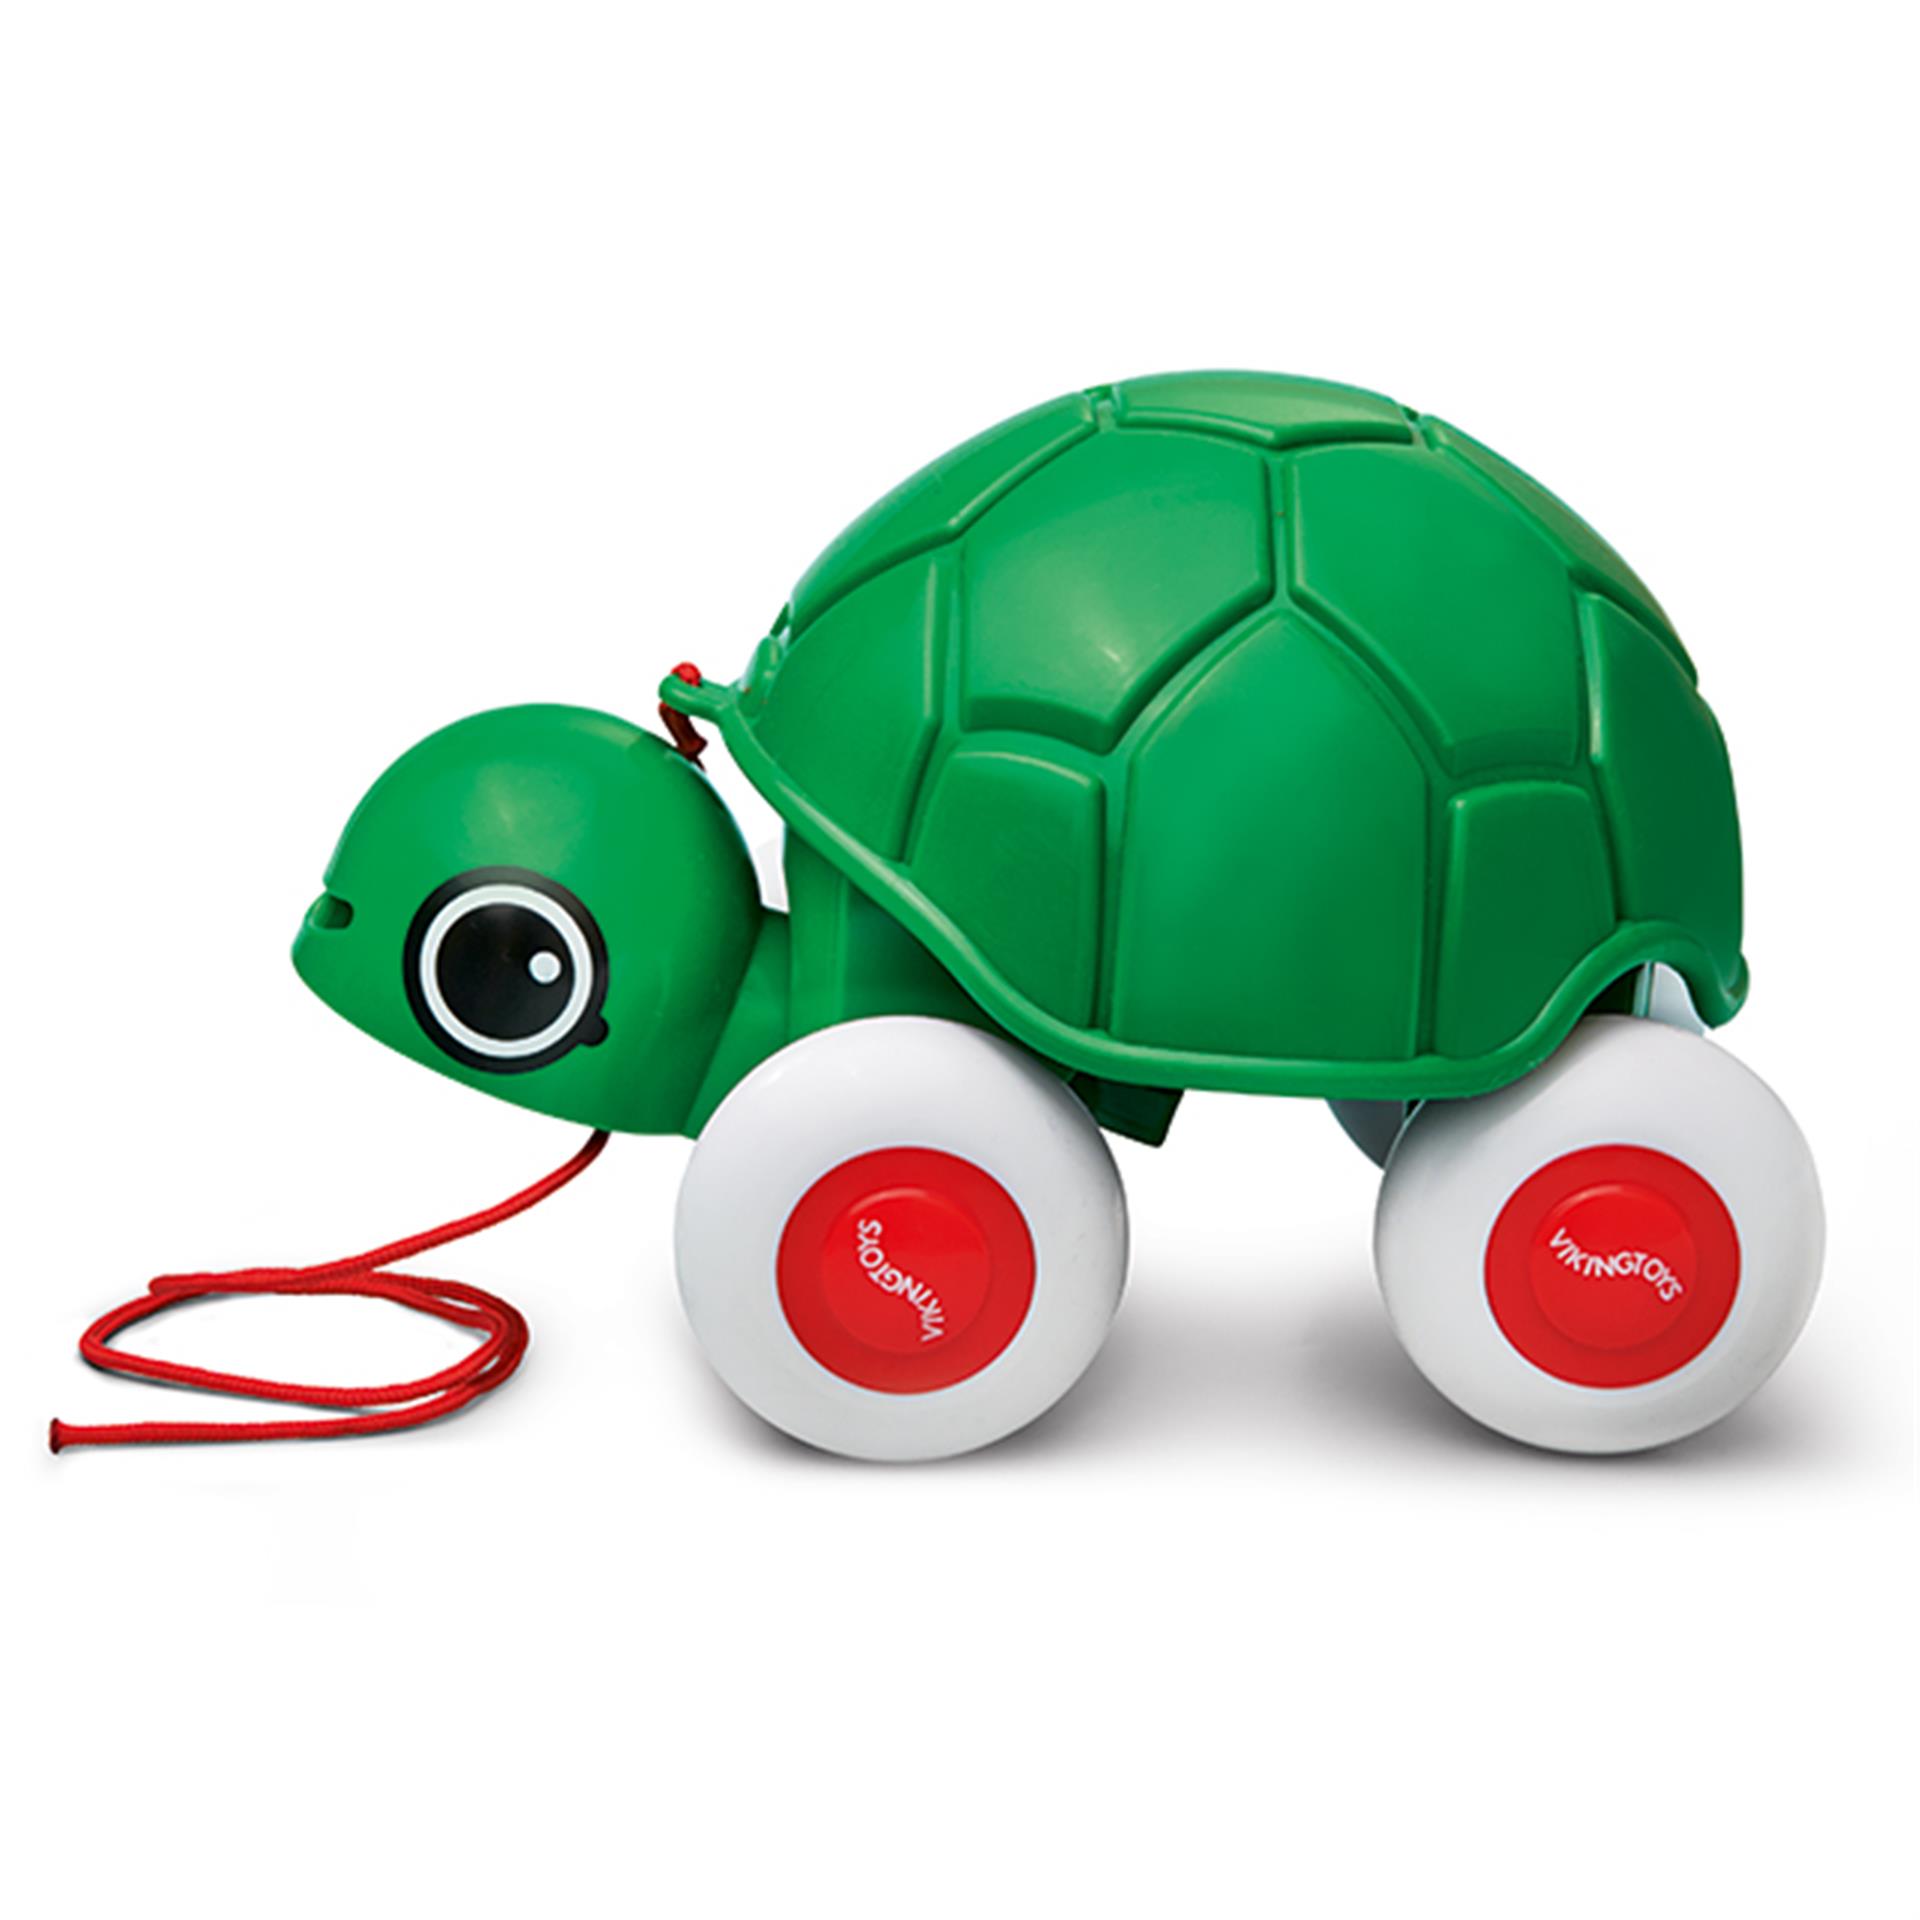 Nachziehtier Schildkröte Viking Toys